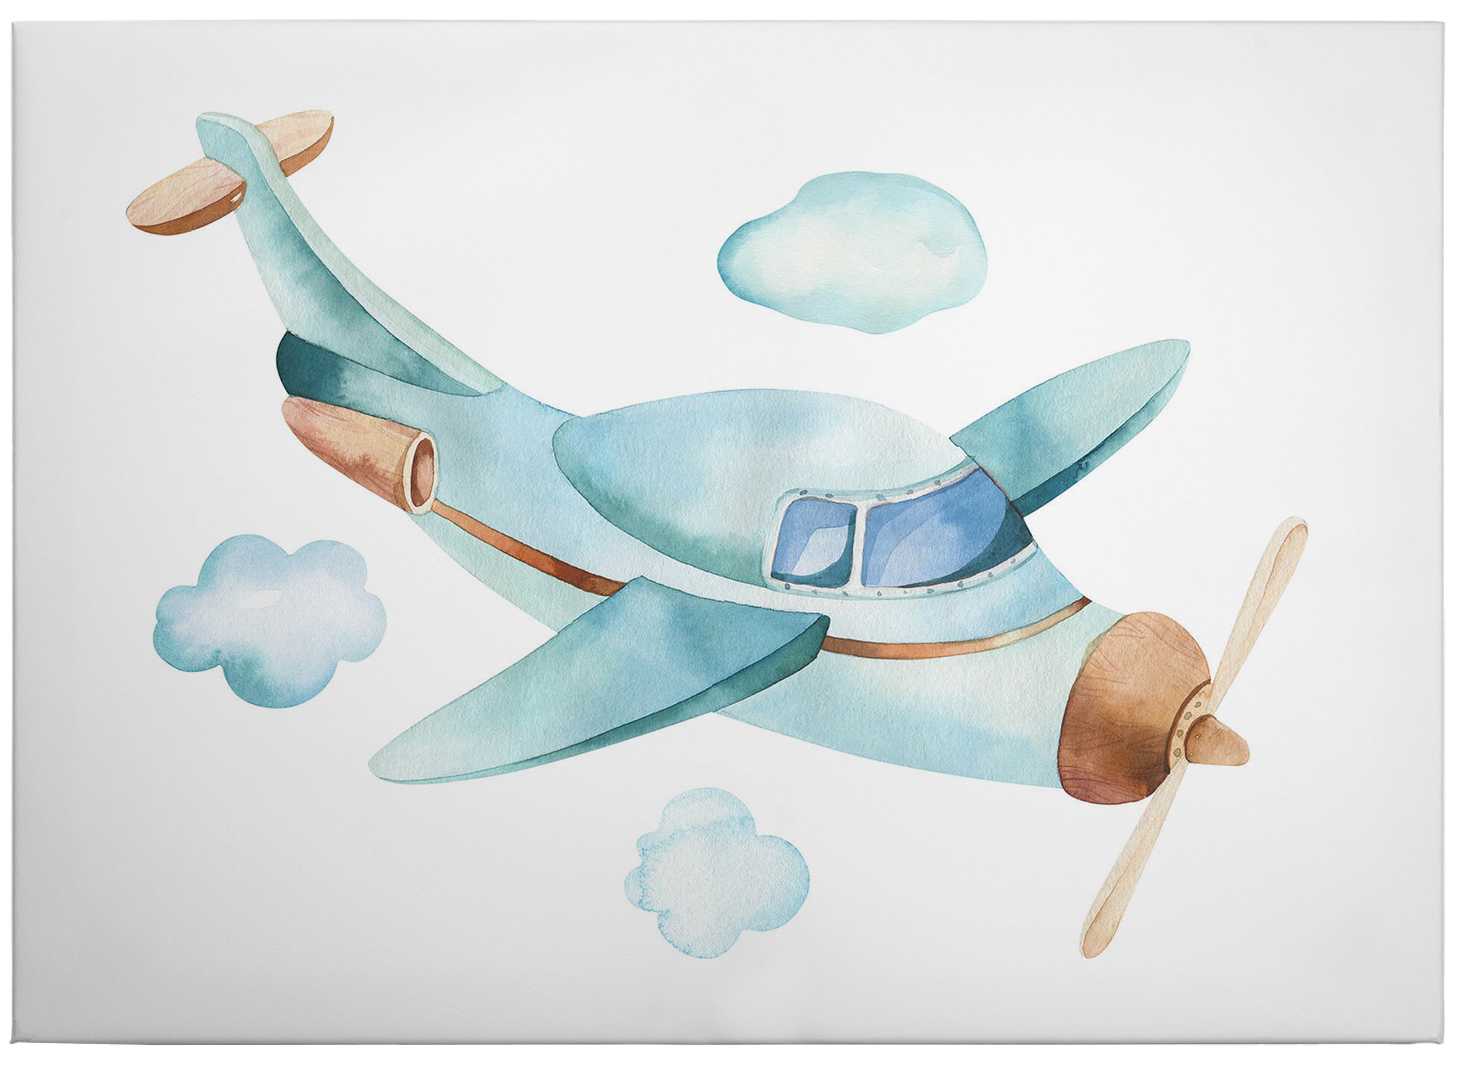             Leinwandbild Flugzeug Aquarell Wolken Himmel von Kvilis – 0,70 m x 0,50 m
        